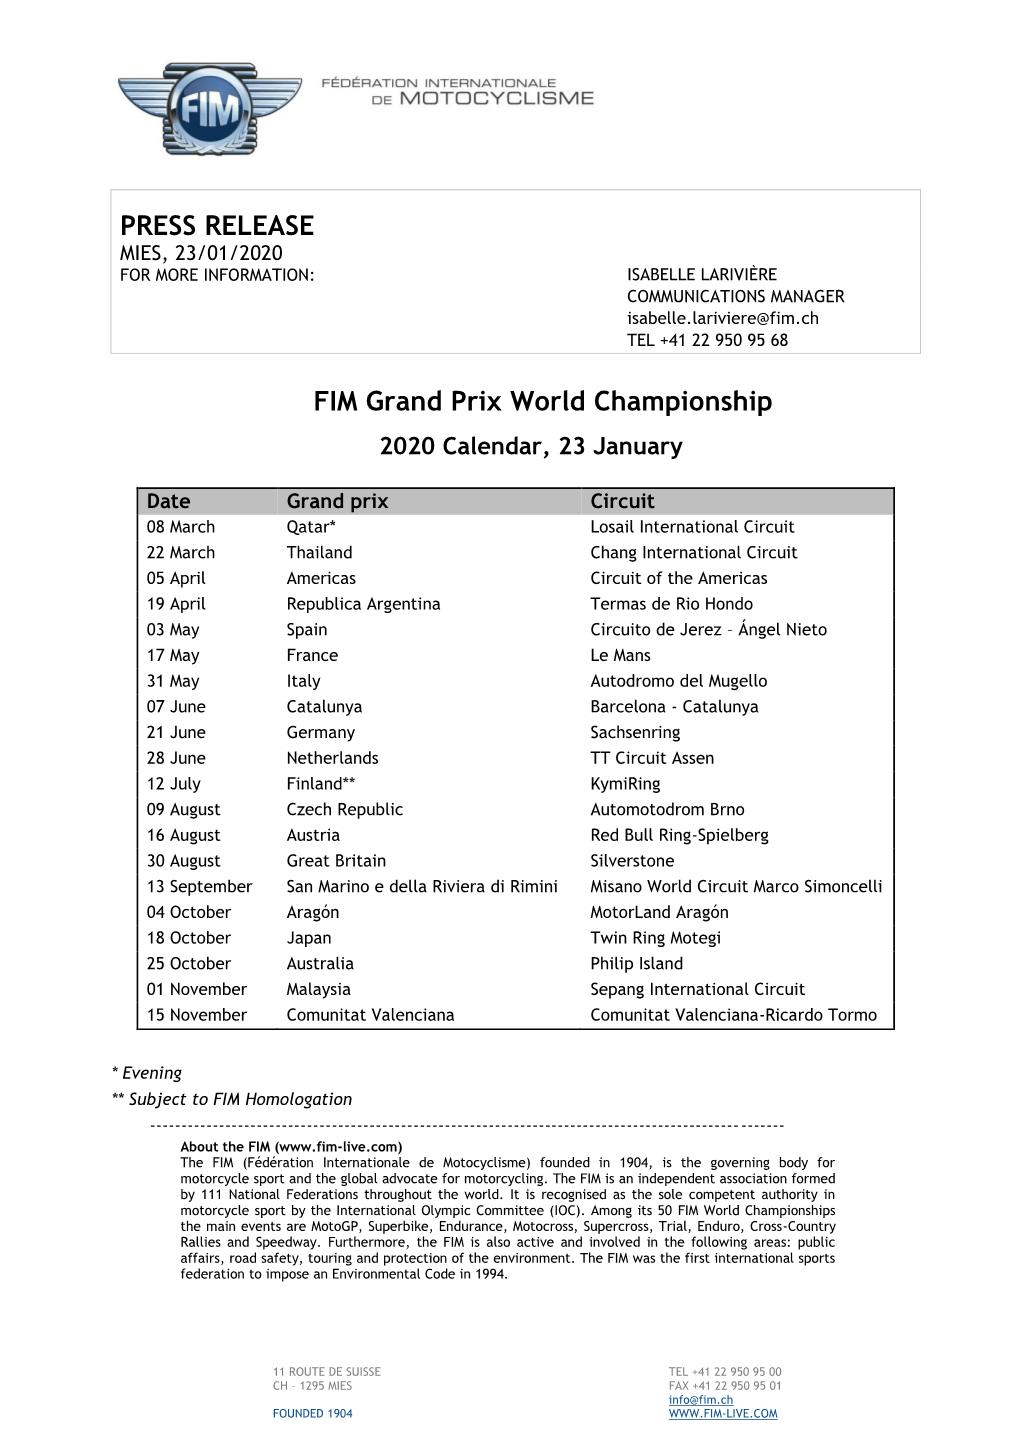 PRESS RELEASE FIM Grand Prix World Championship